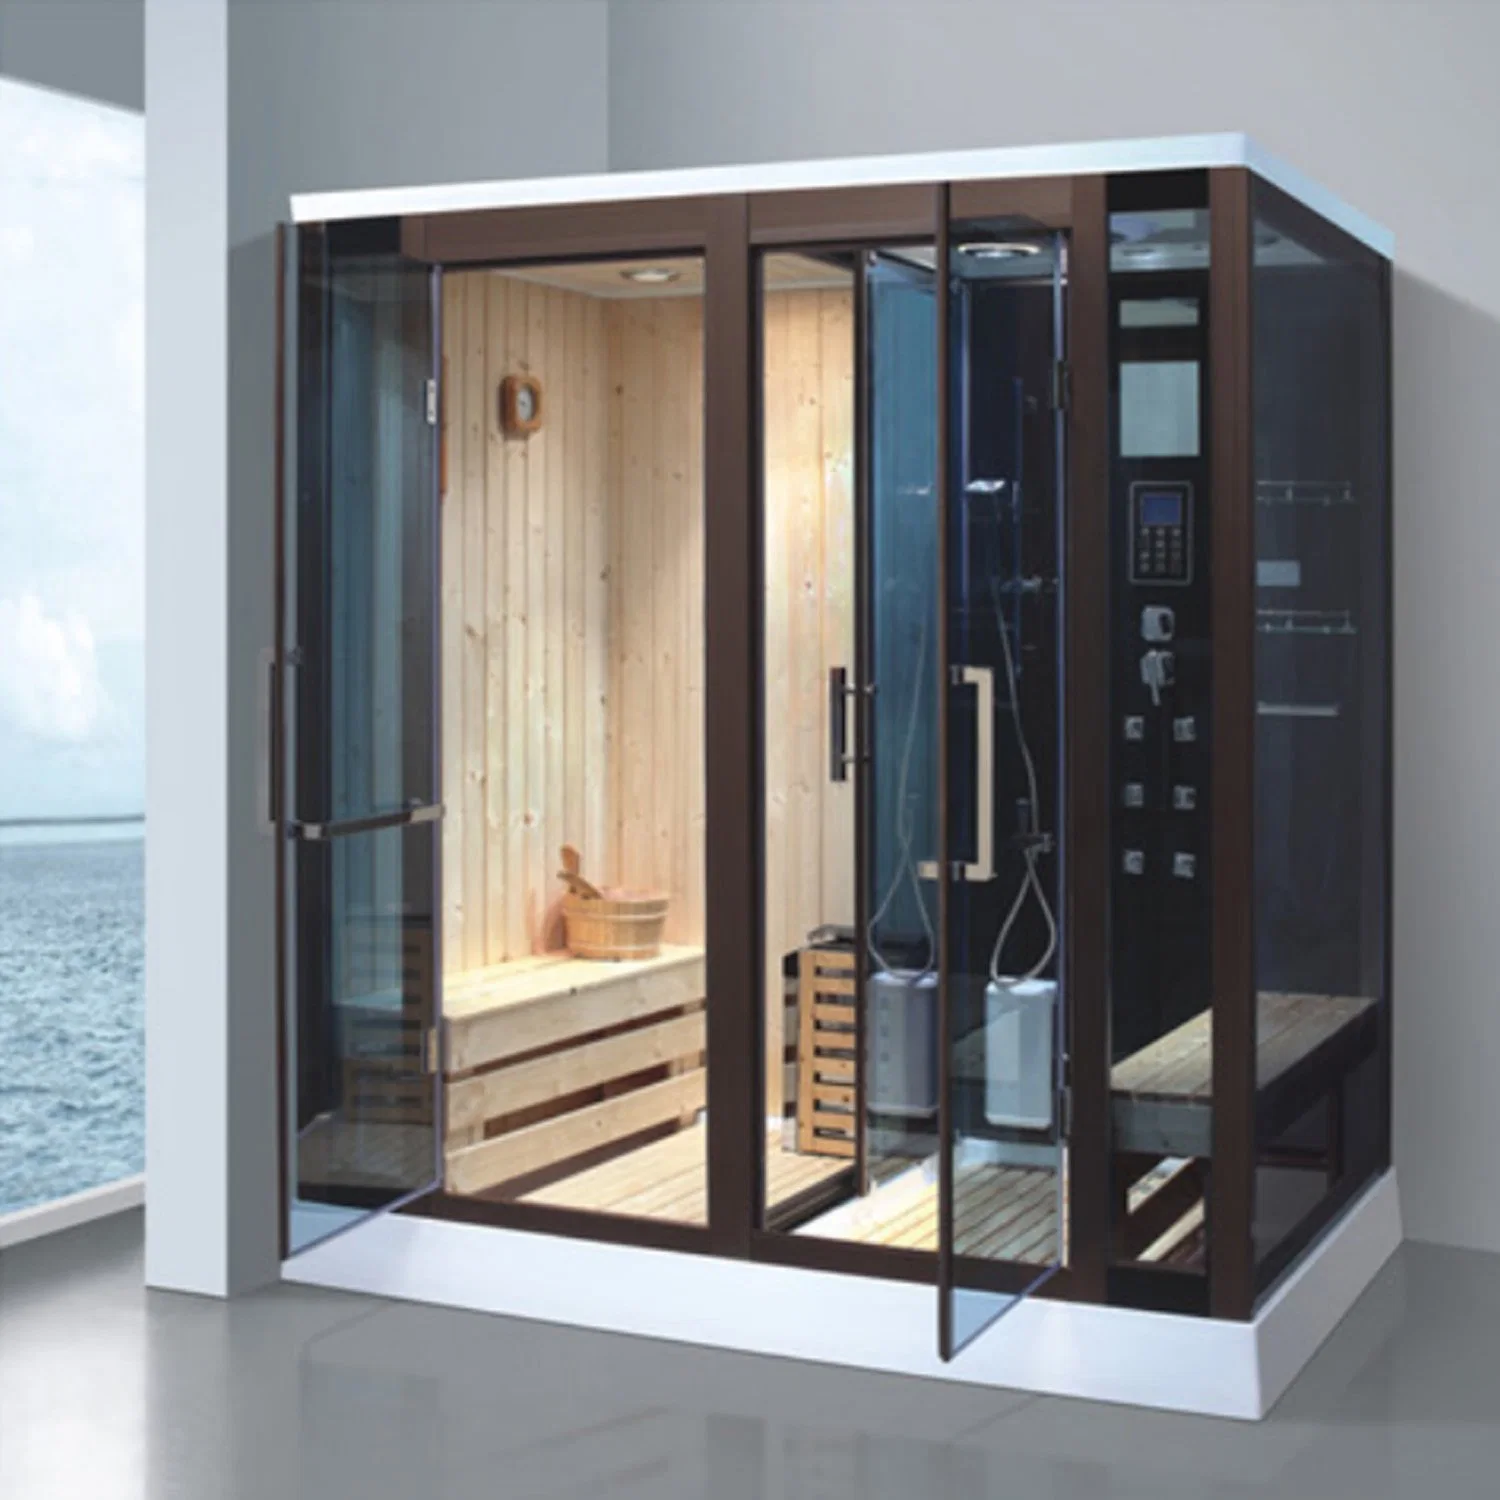 Bain de vapeur et sauna/ sauna sauna/sauna House avec Salle de douche